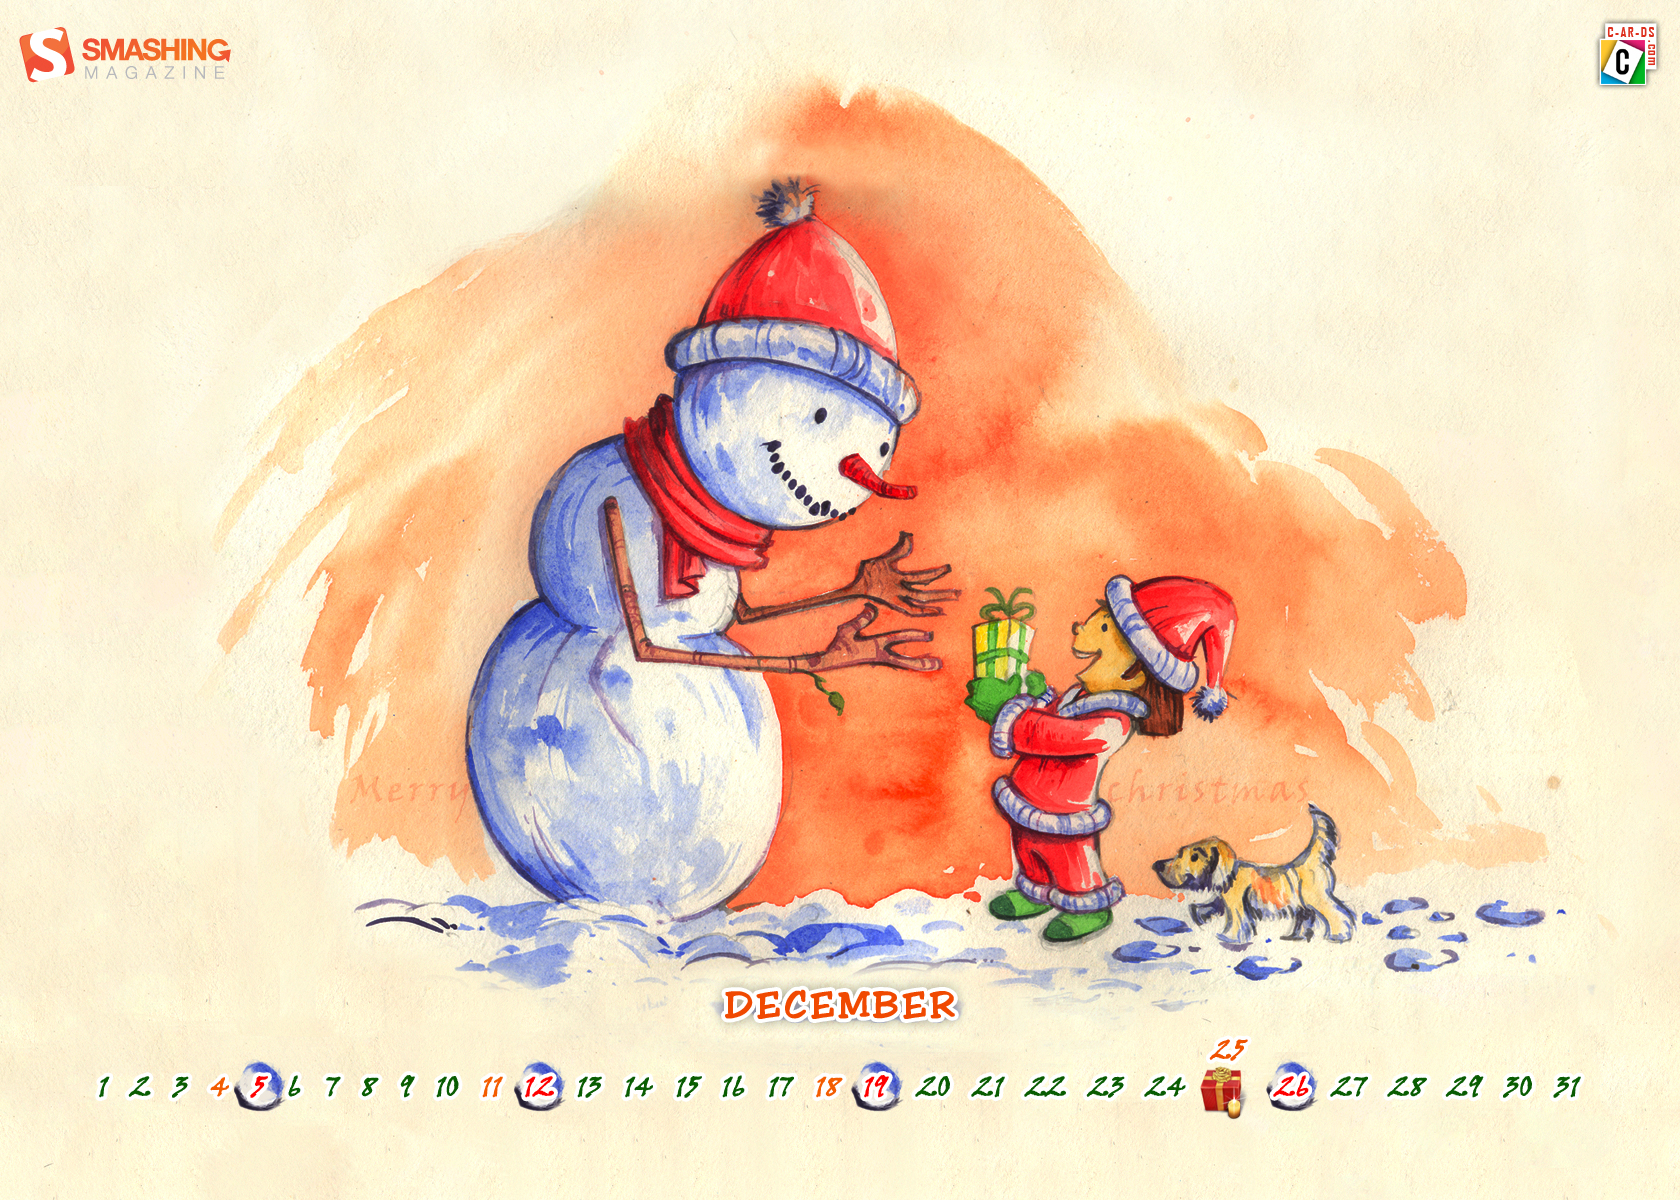 3d обои Календарь на декабрь, Маленький санта вручает подарок снеговику подарок (Marry Chr istmas, december)  эмоциональные # 90032